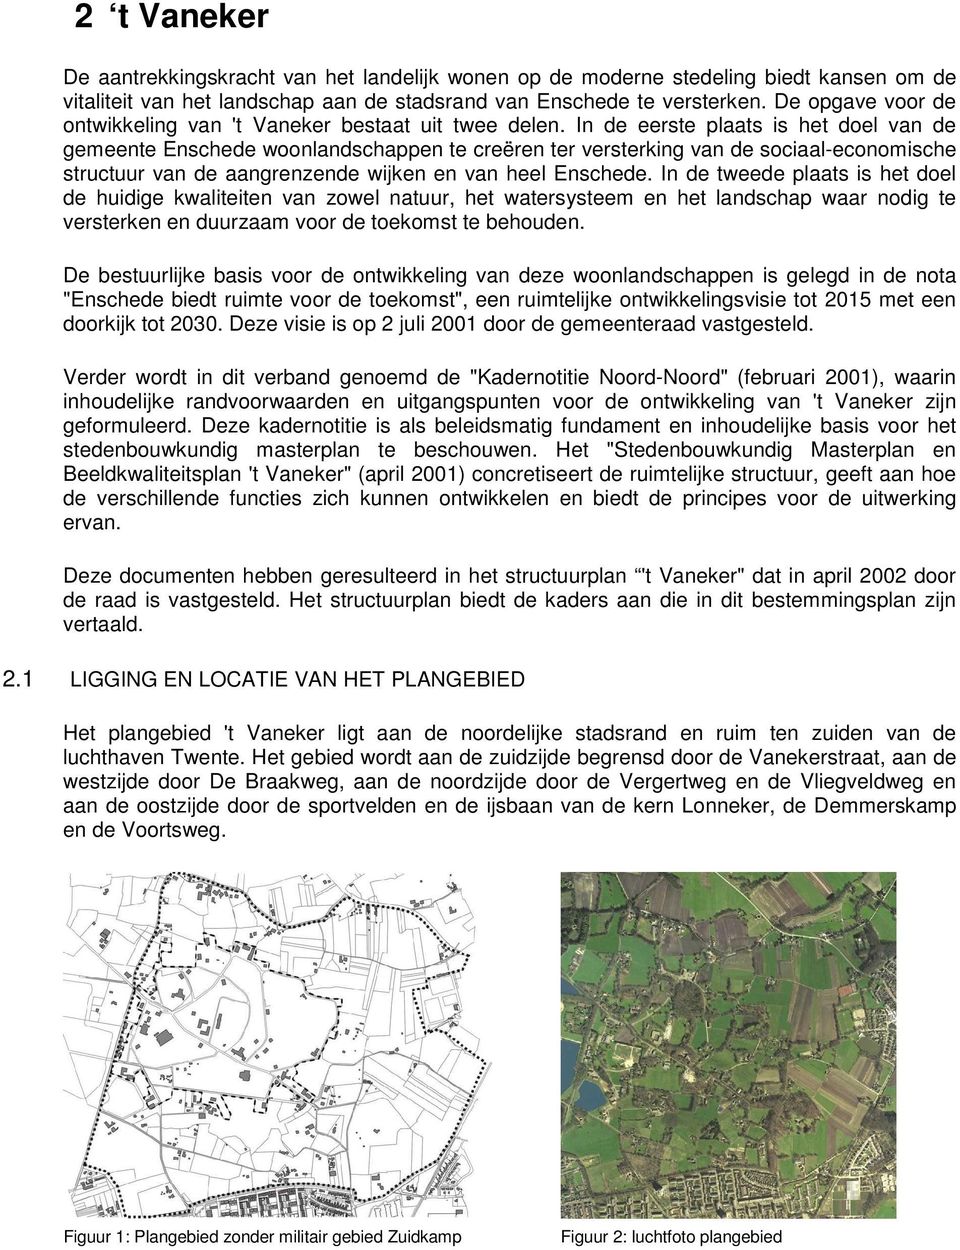 In de eerste plaats is het doel van de gemeente Enschede woonlandschappen te creëren ter versterking van de sociaal-economische structuur van de aangrenzende wijken en van heel Enschede.